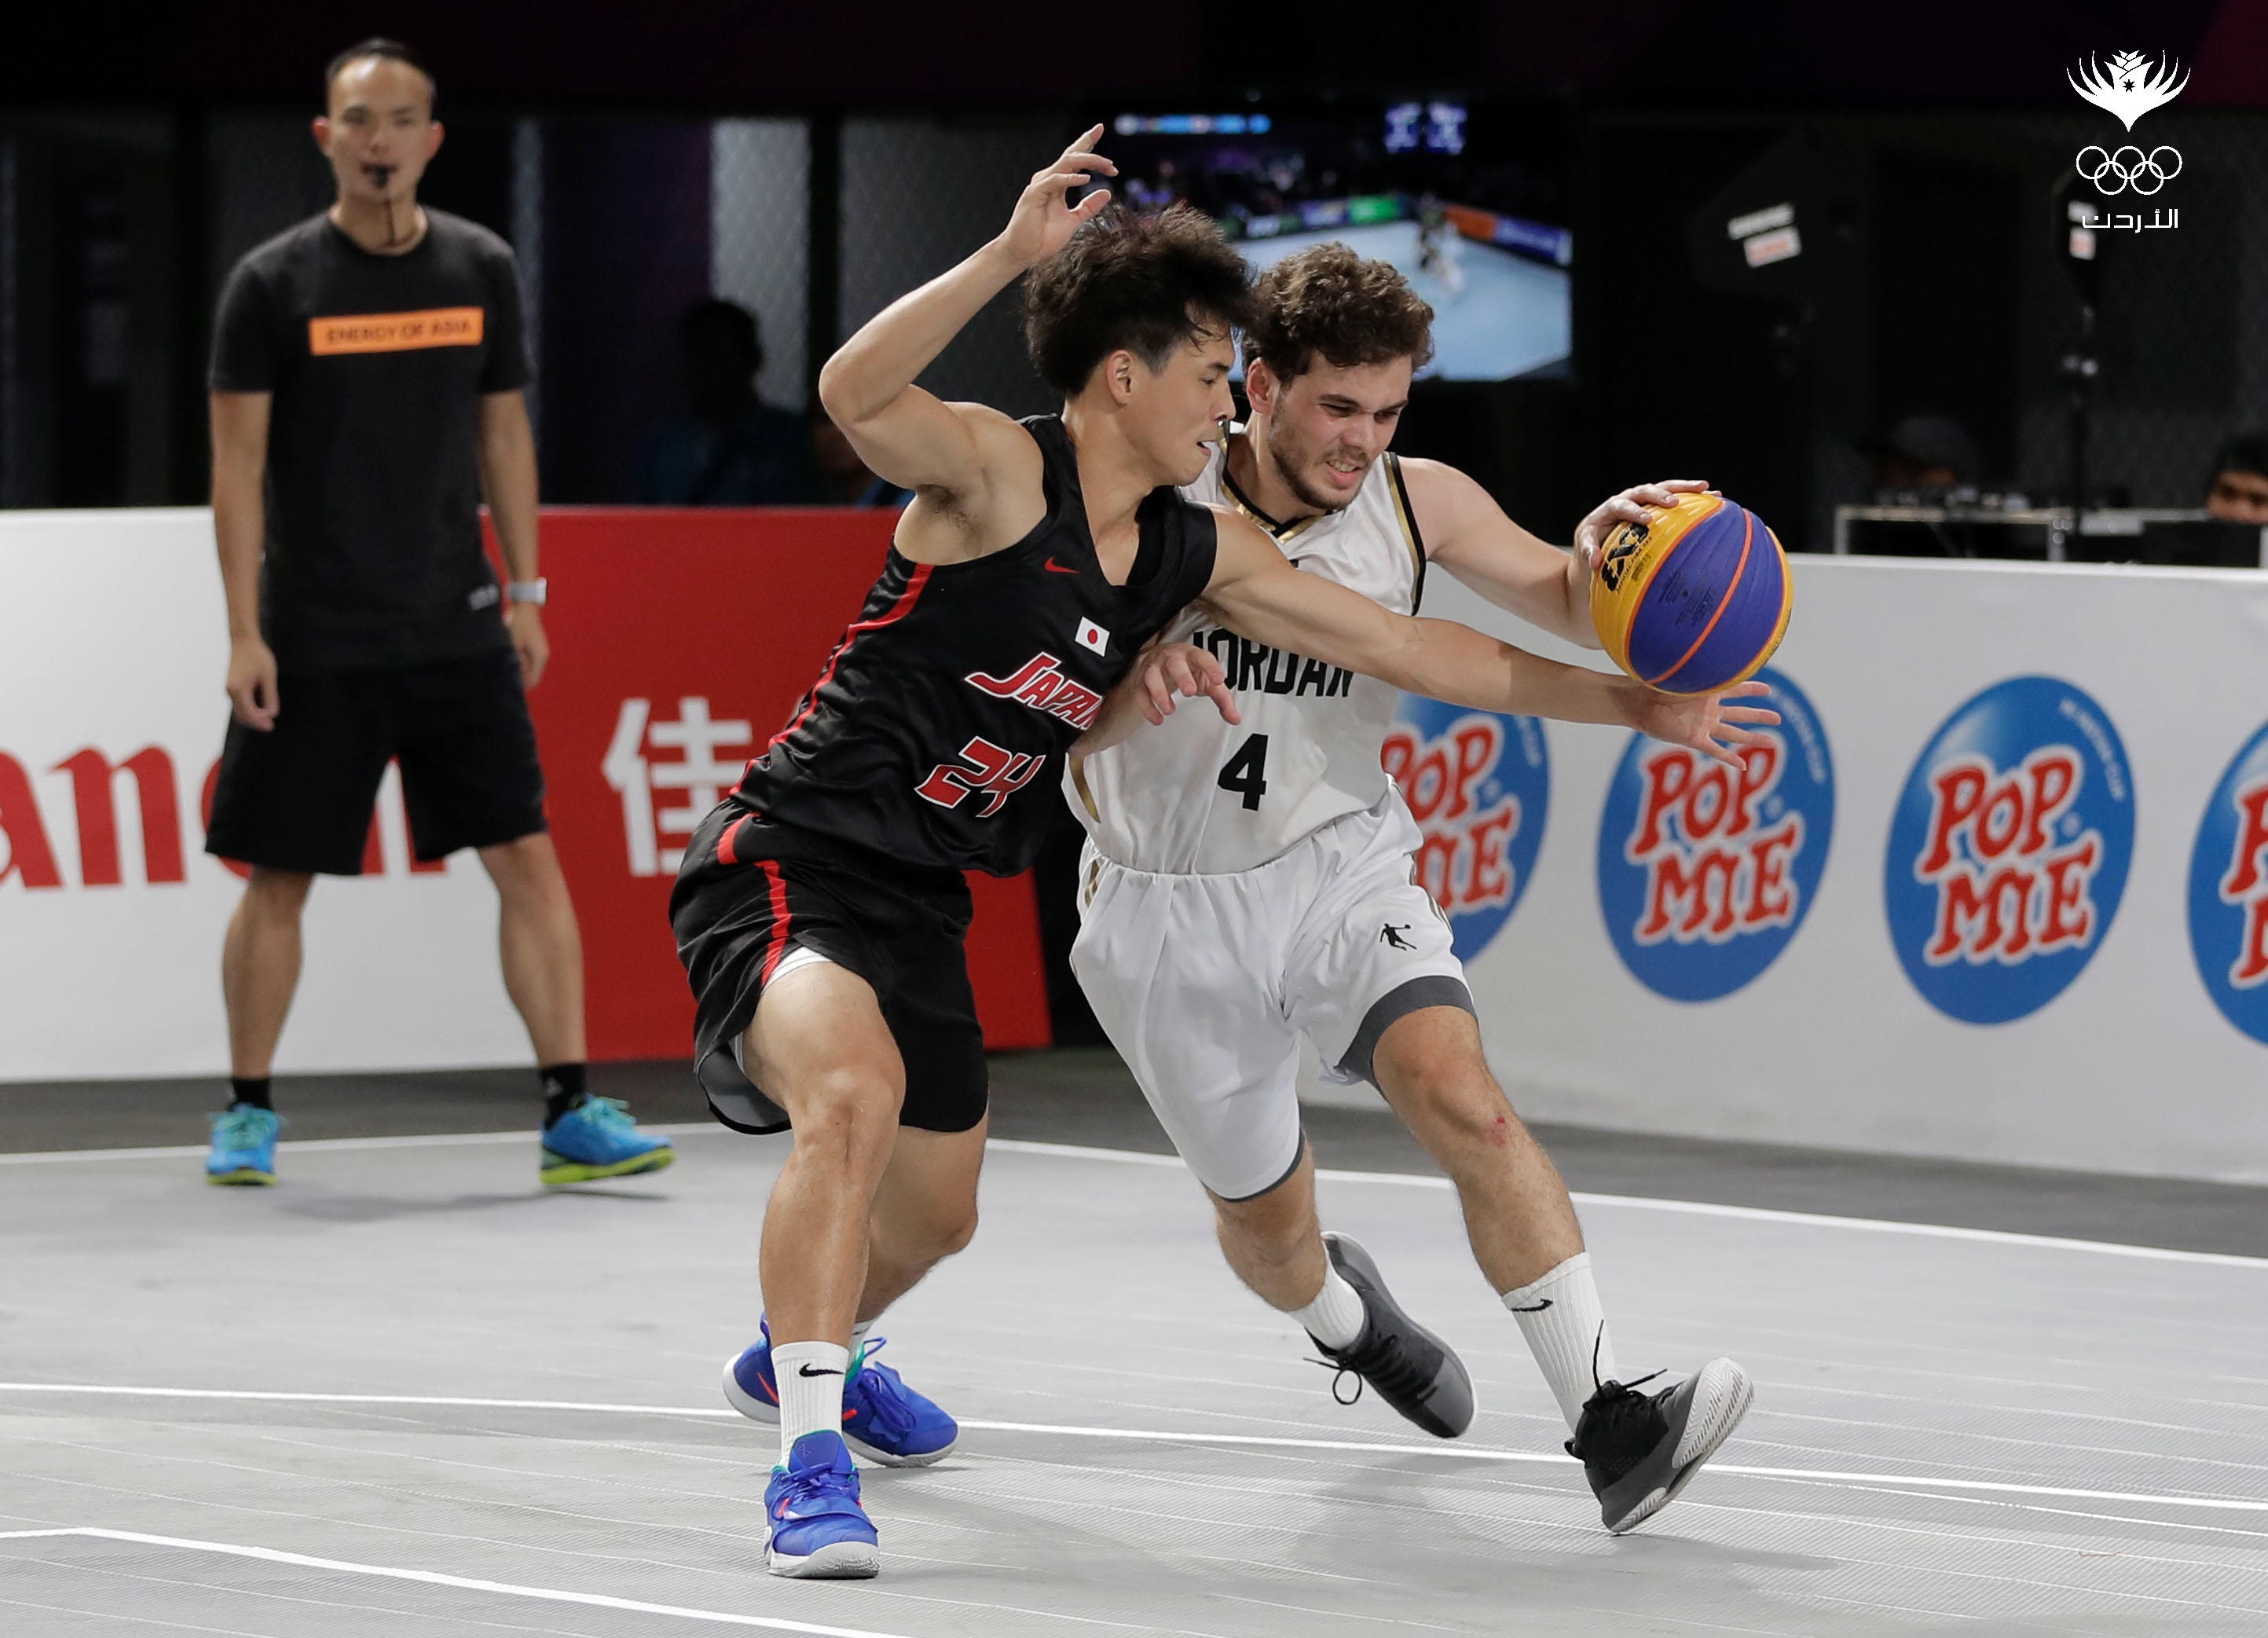 مباراة منتخب السلة 3x3 ضد منتخب اليابان في دورة الألعاب الآسيوية "آسياد 2018" في أندونيسيا. اللجنة الأولمبية الأردنية